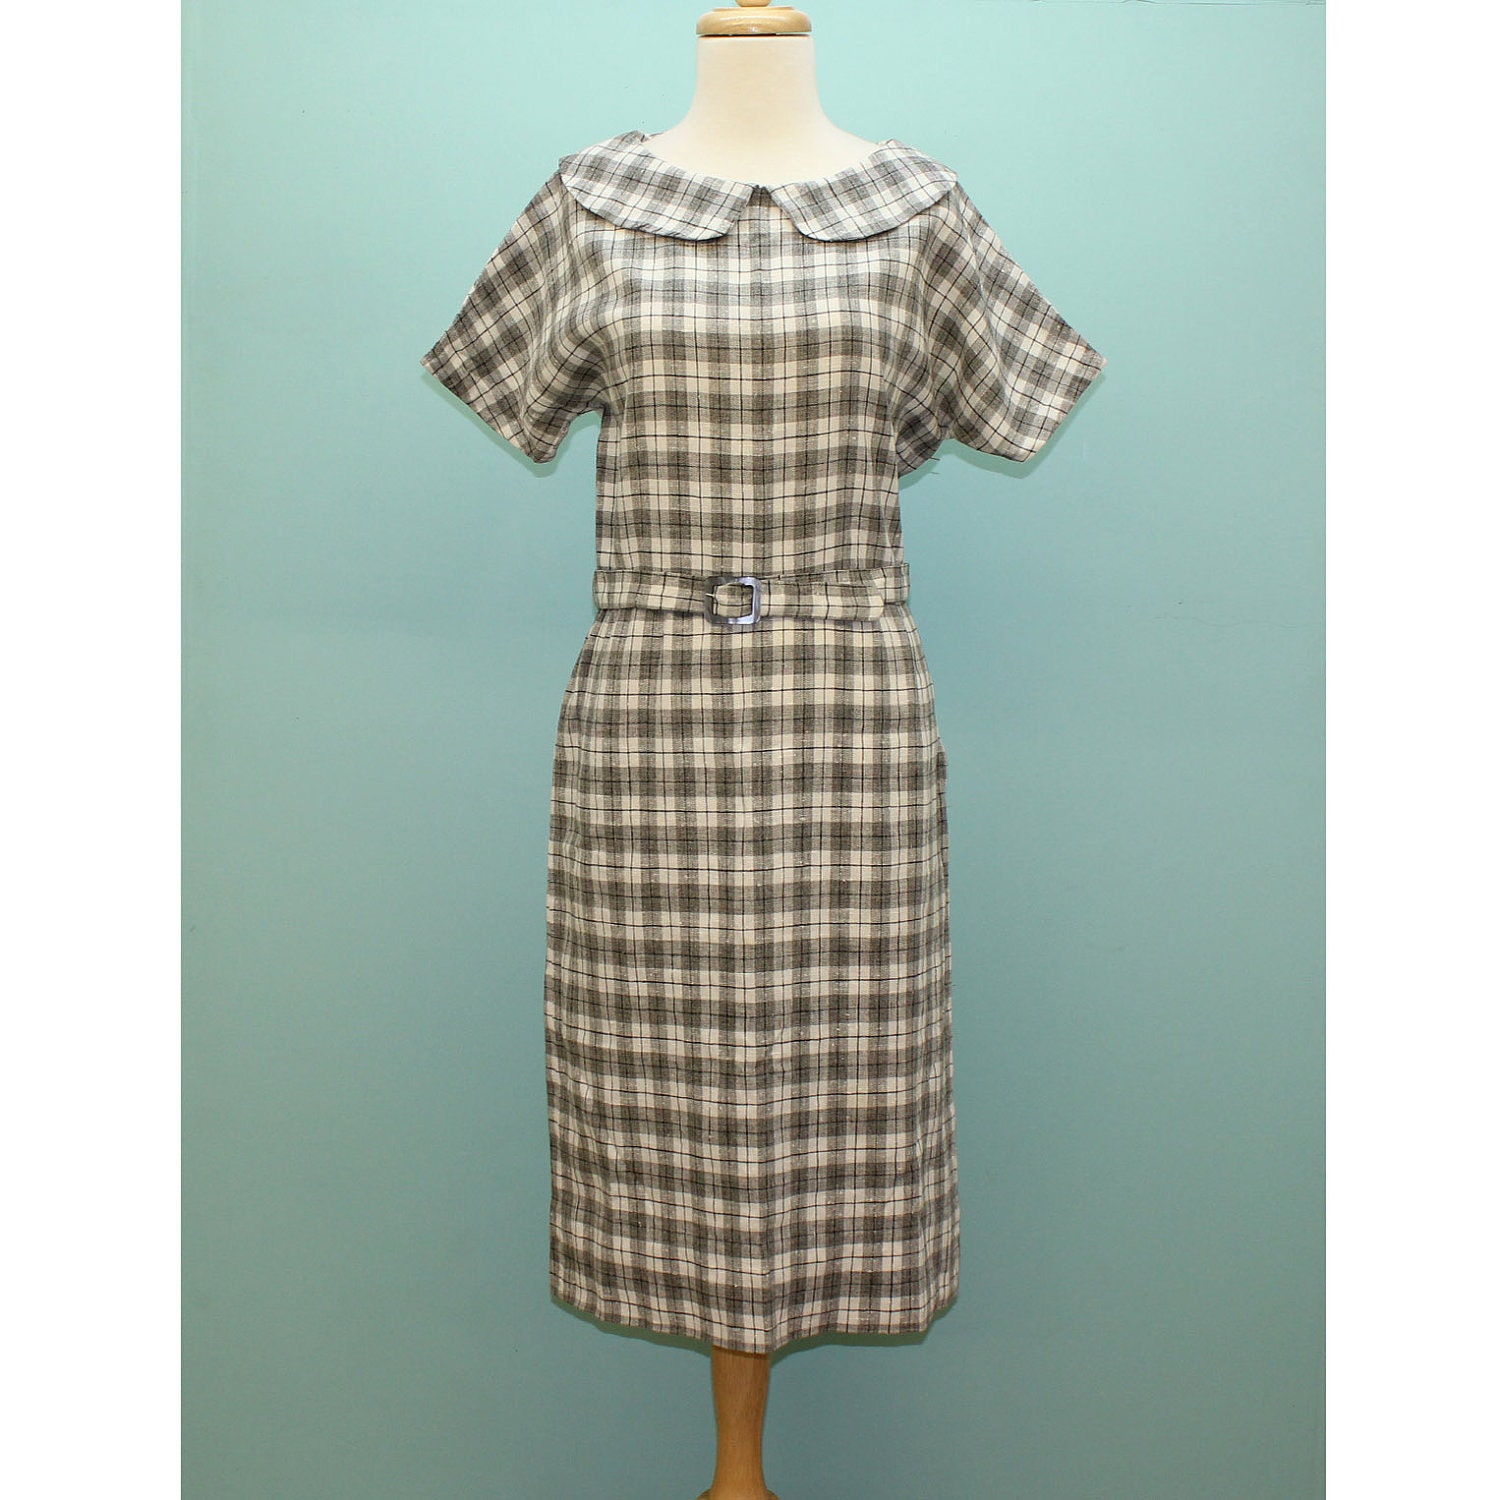 60's Plaid Linen Belted Shirtwaist Dress - Medium to Large